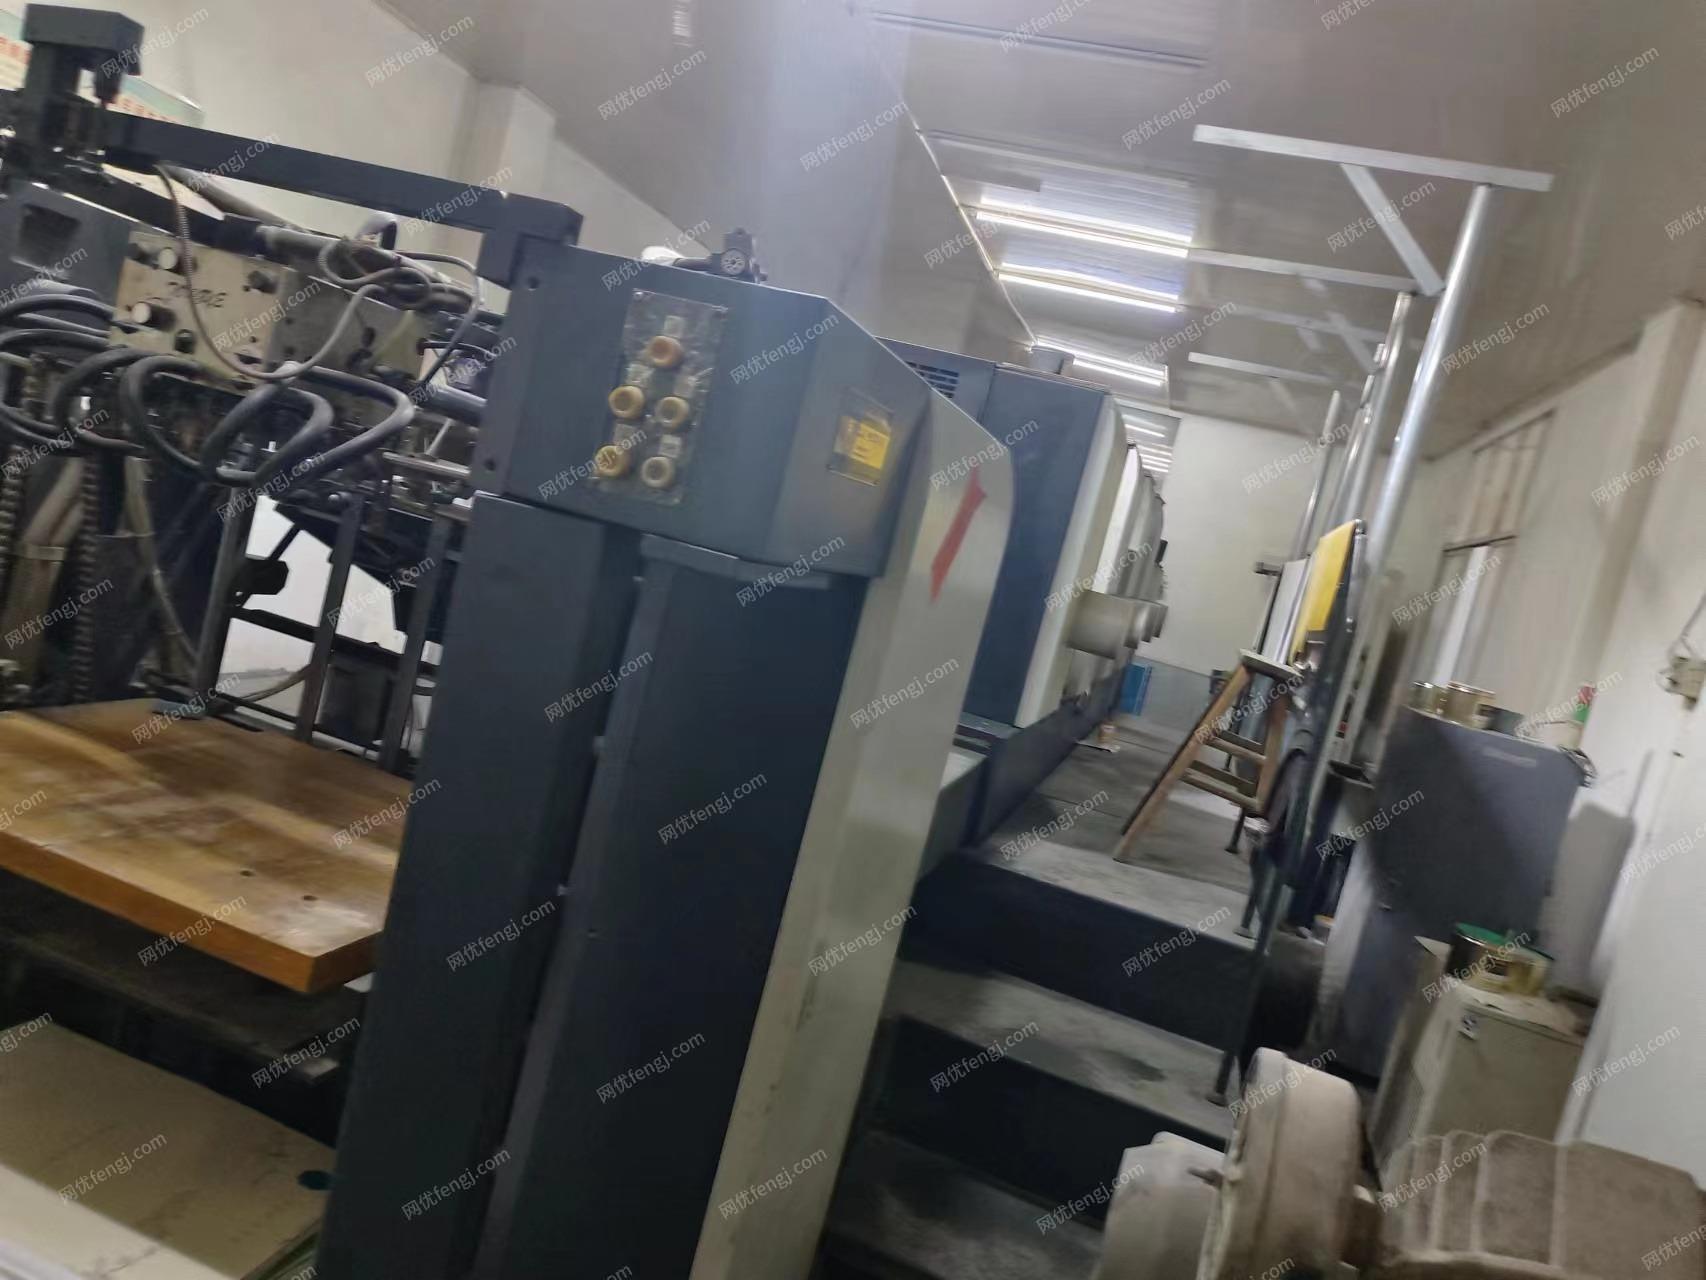 江西萍乡印刷厂在位印刷机处理